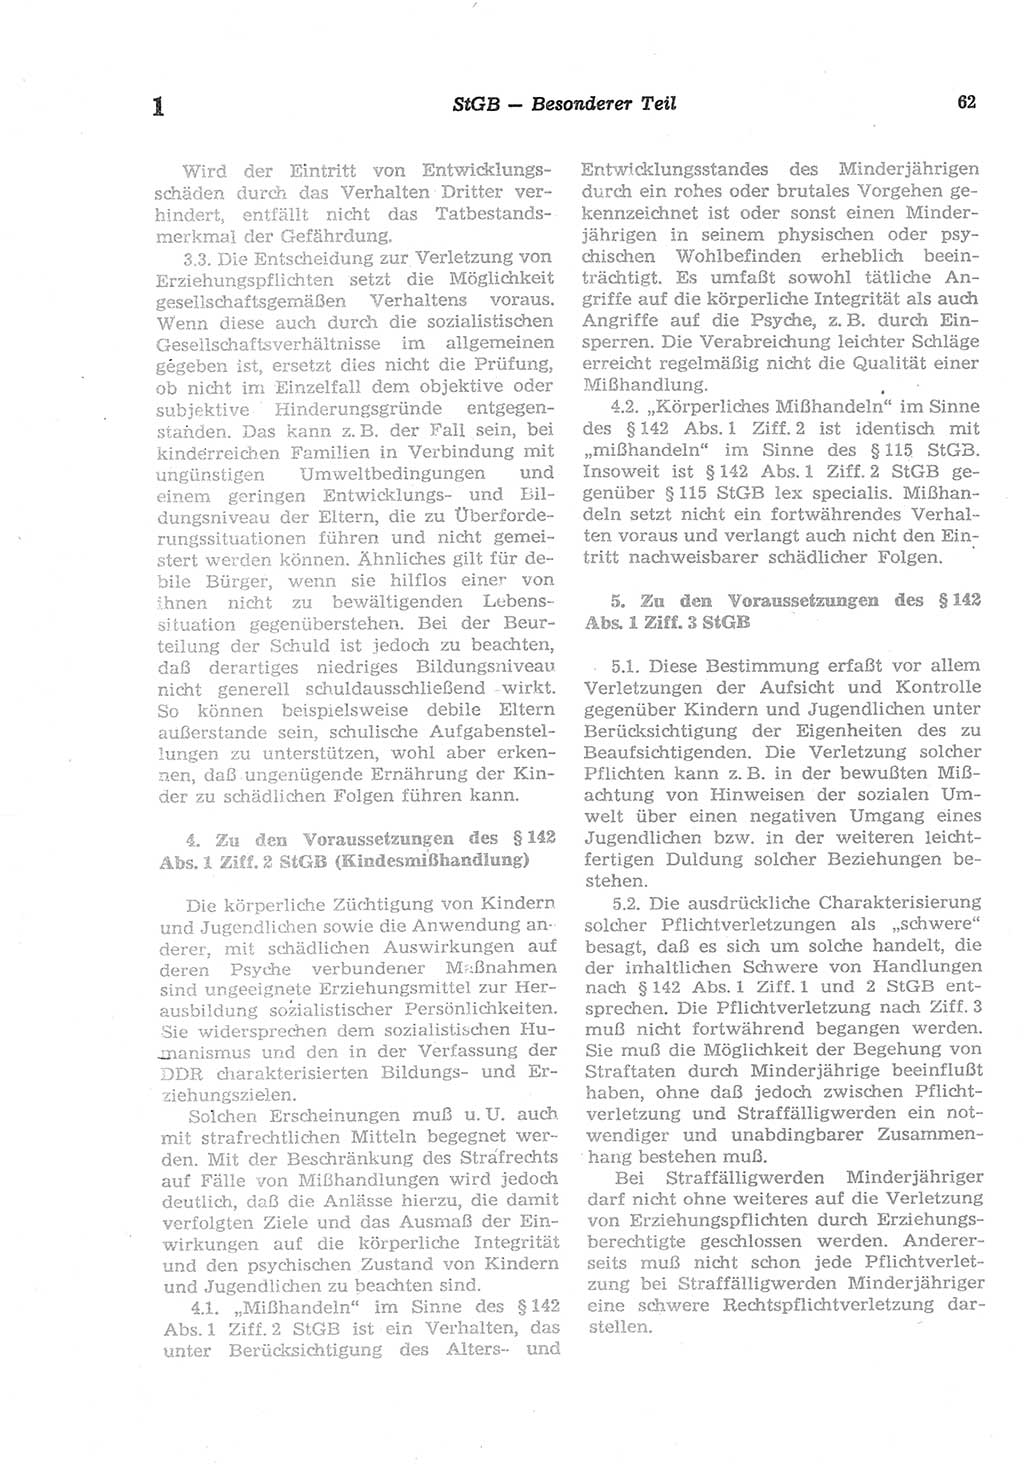 Strafgesetzbuch (StGB) der Deutschen Demokratischen Republik (DDR) und angrenzende Gesetze und Bestimmungen 1977, Seite 62 (StGB DDR Ges. Best. 1977, S. 62)